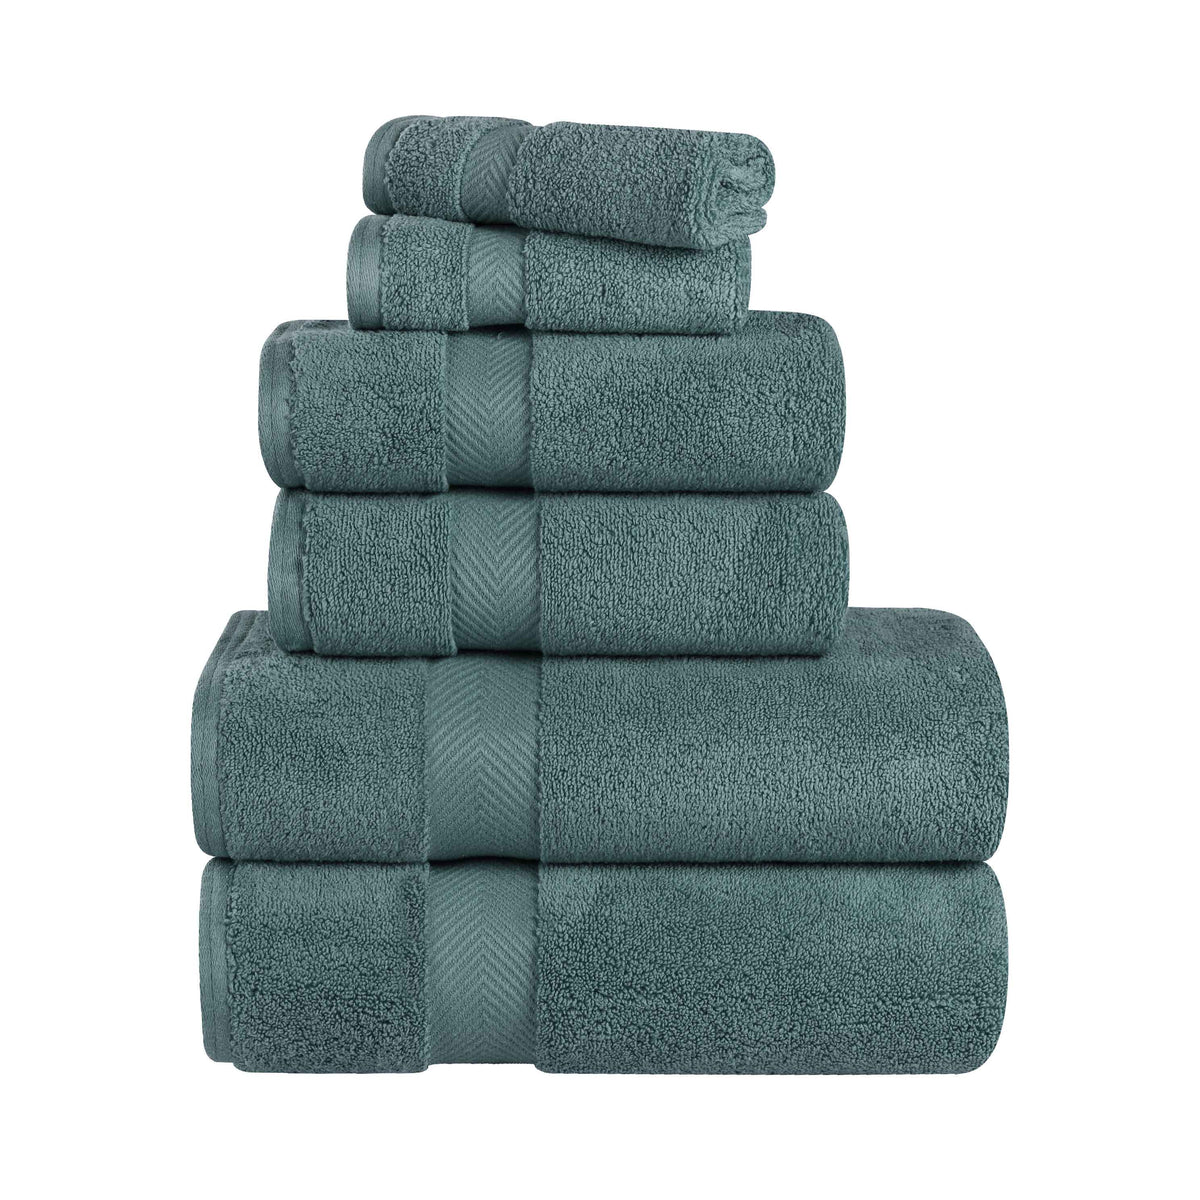 Zero-Twist Cotton Quick-Drying Absorbent Assorted 6 Piece Towel Set - Jade